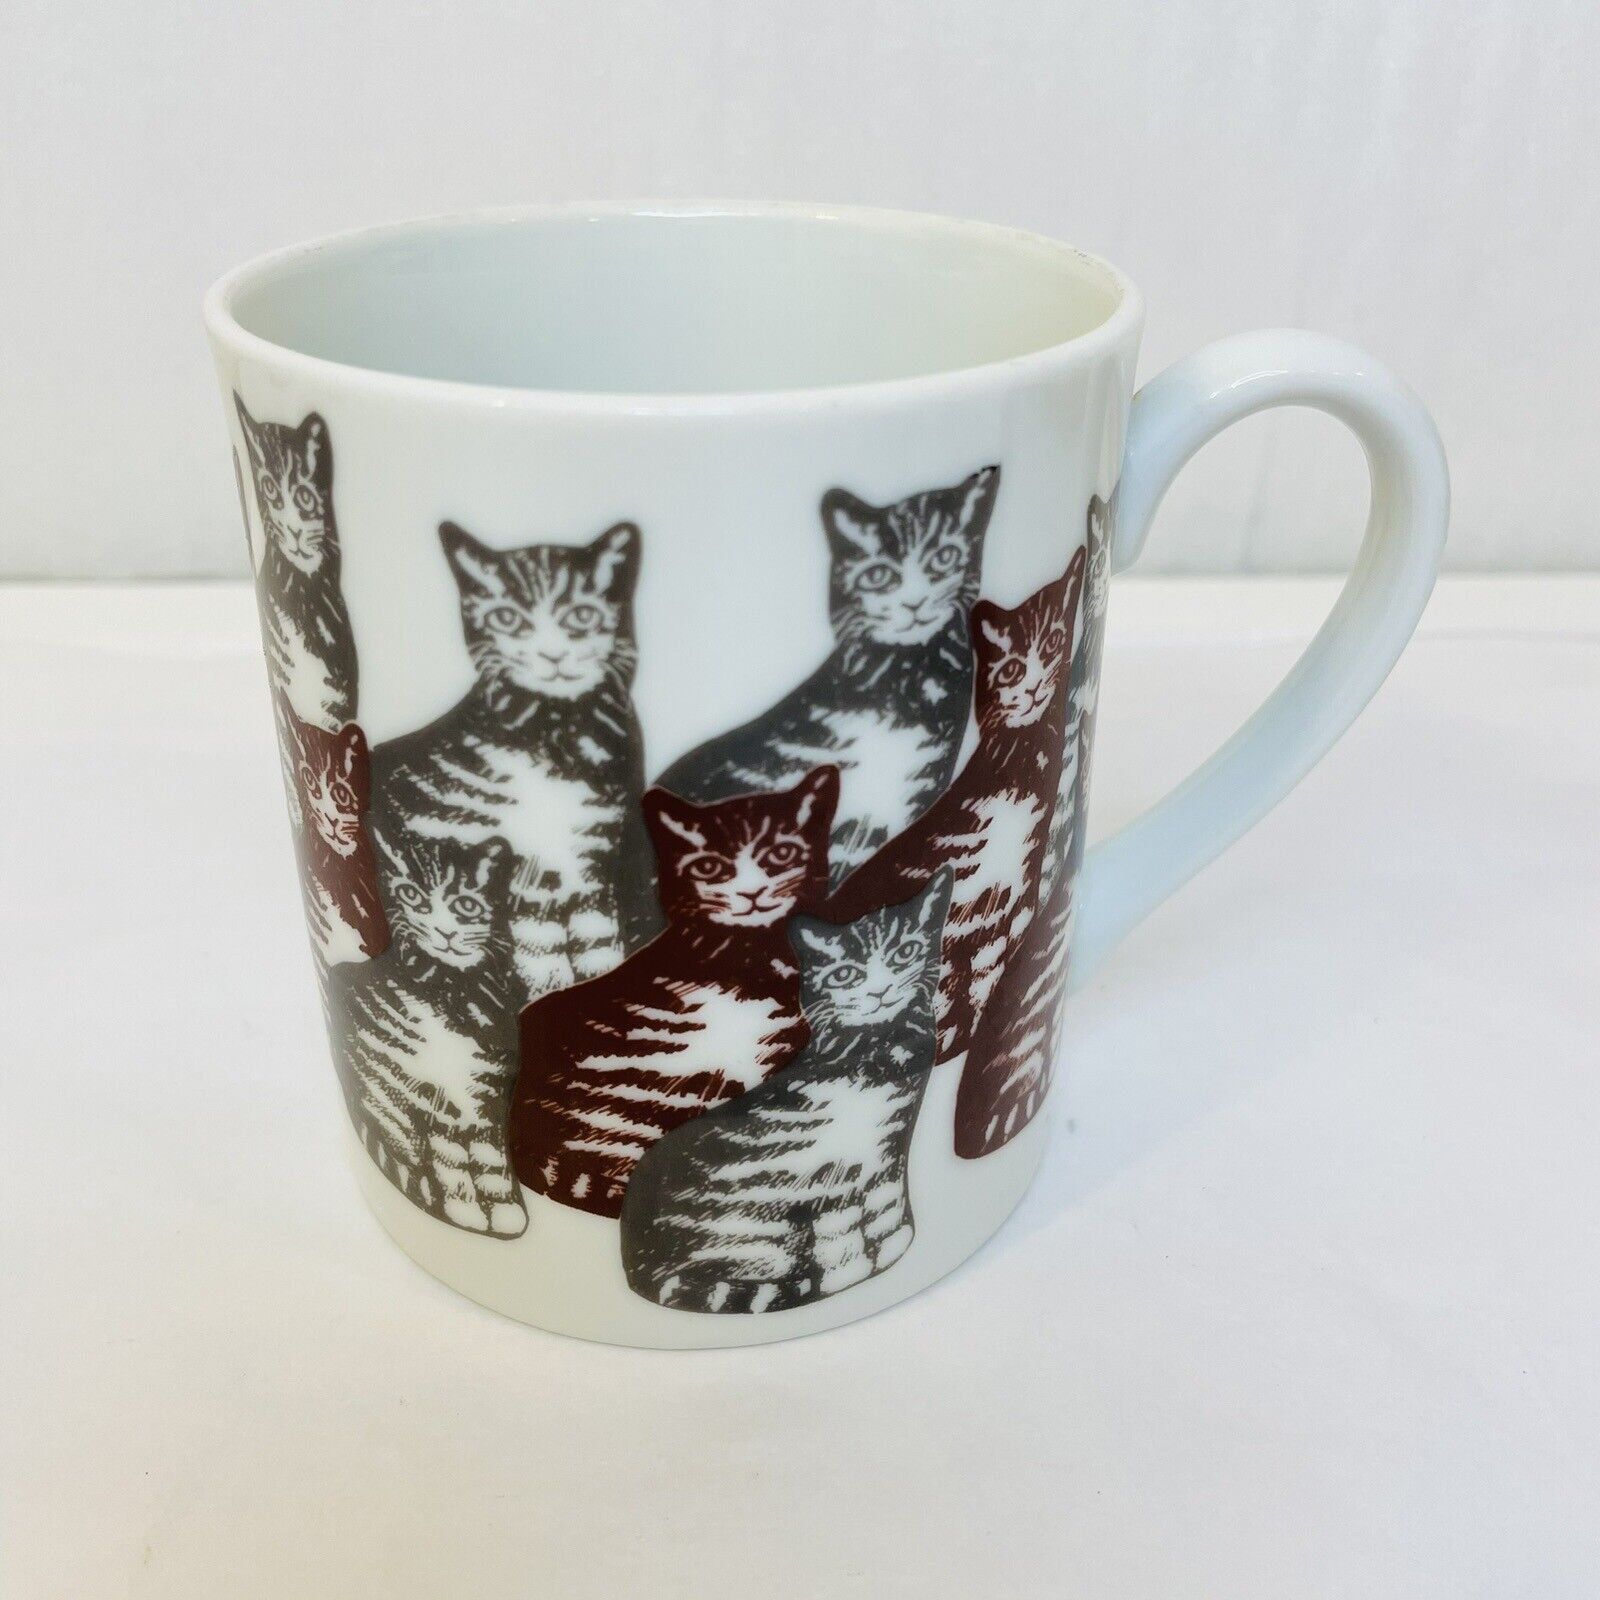 Tiger Striped Tabby Cats Mug Gray Tabby Brown Tabby by Knobler Japan VTG 1980s